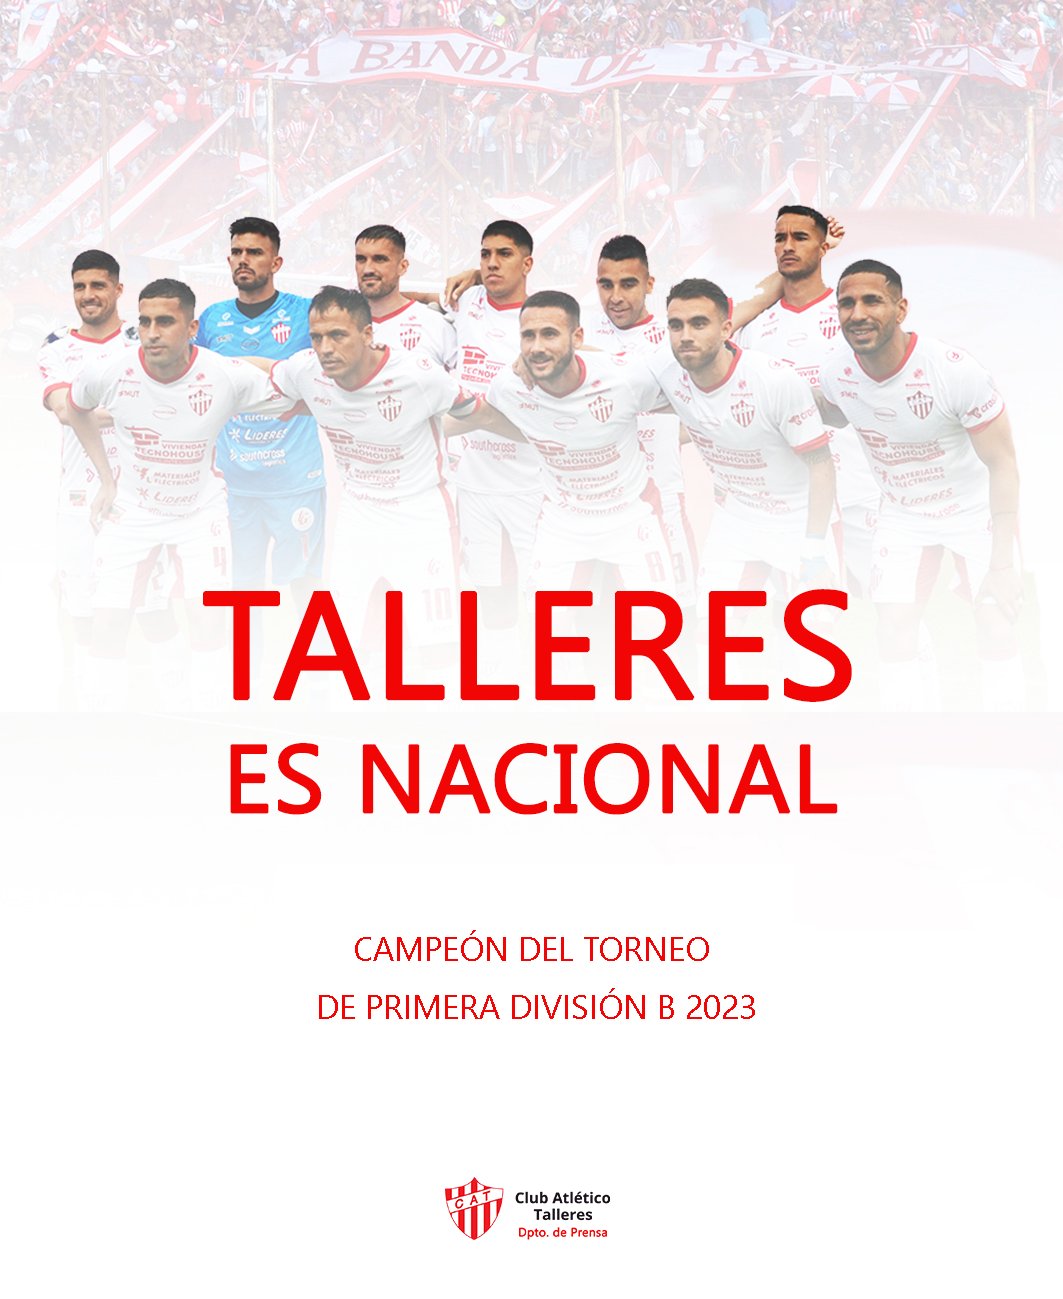 Club Atlético Talleres (@ClubTalleresOk) / X